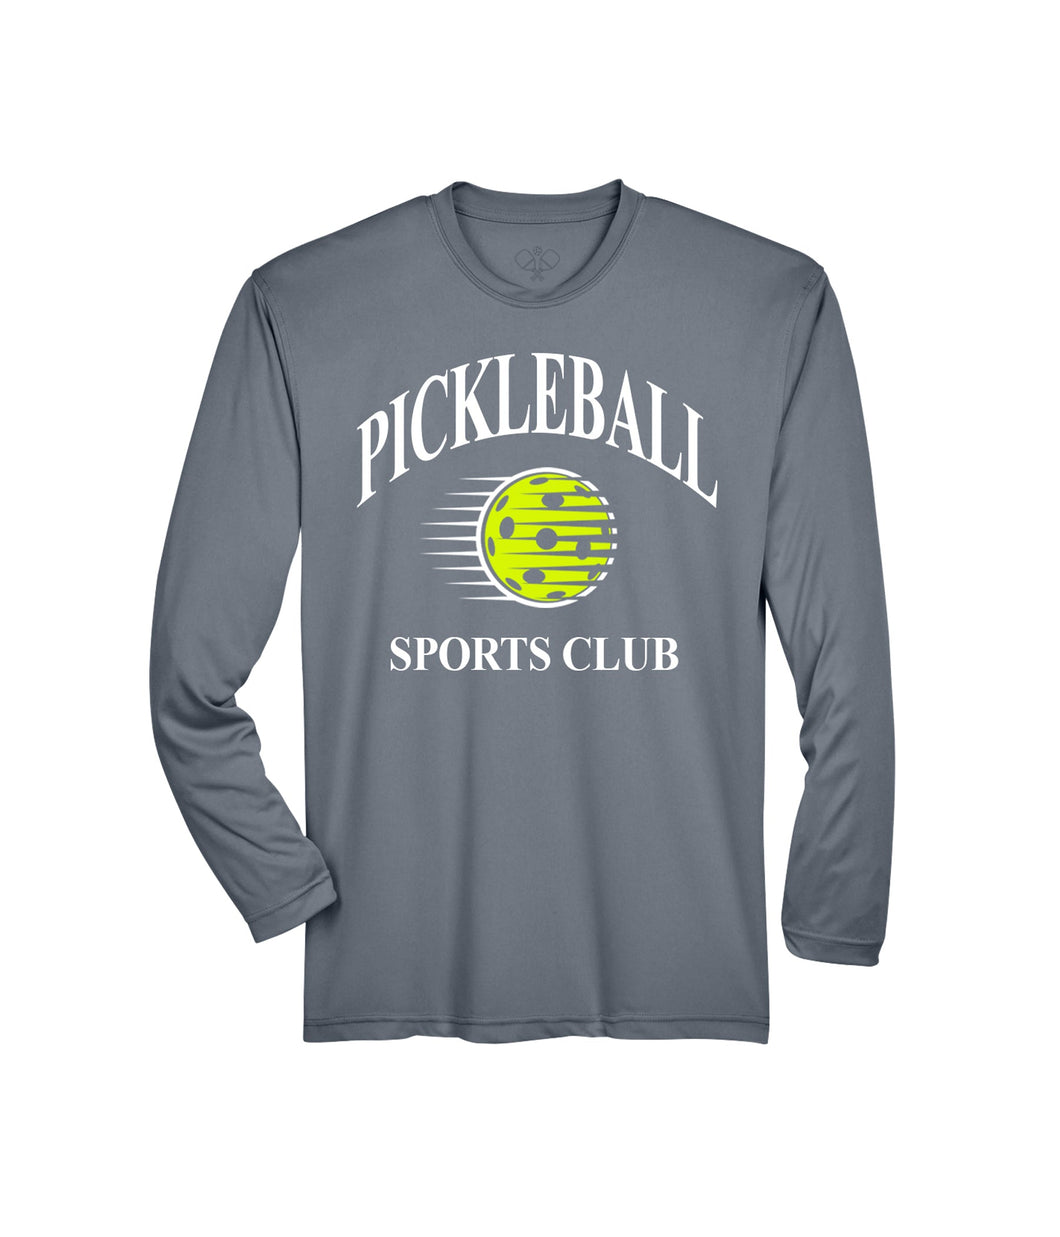 Pickleball Sports Club Dri-Fit LS - Charcoal